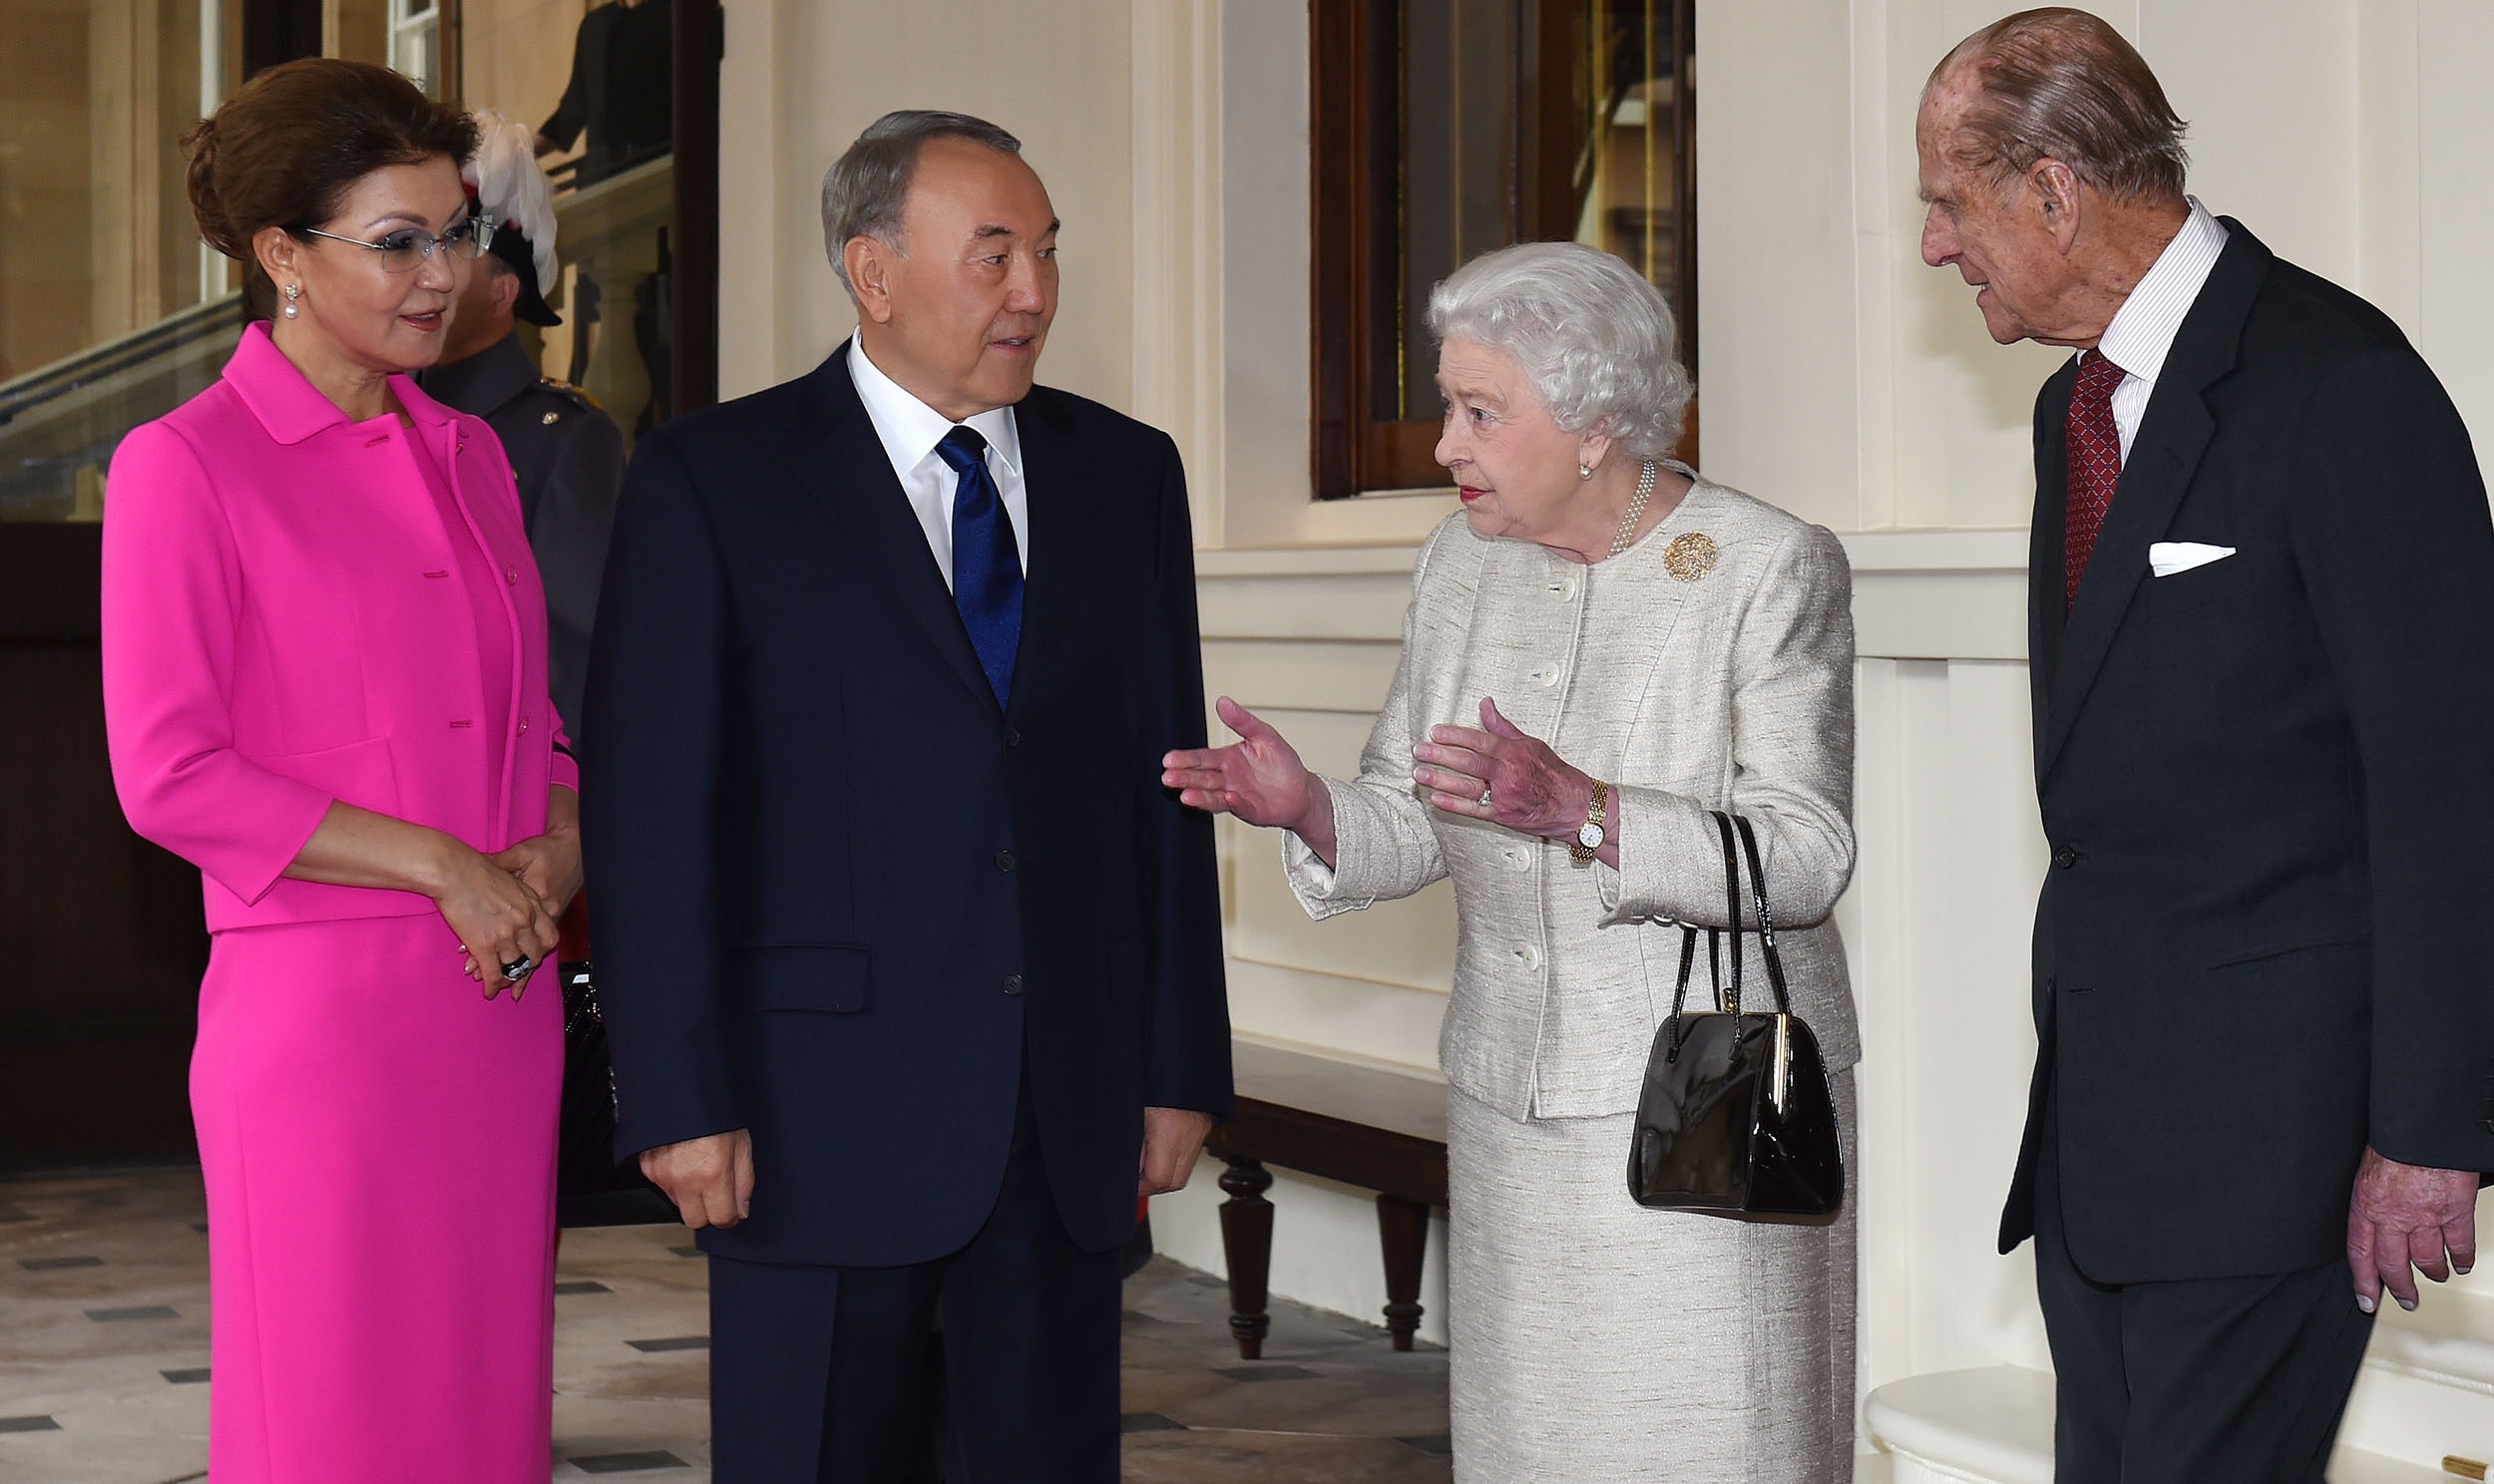 Kazakhstan: Nazarbayev family’s luxury UK assets come to light